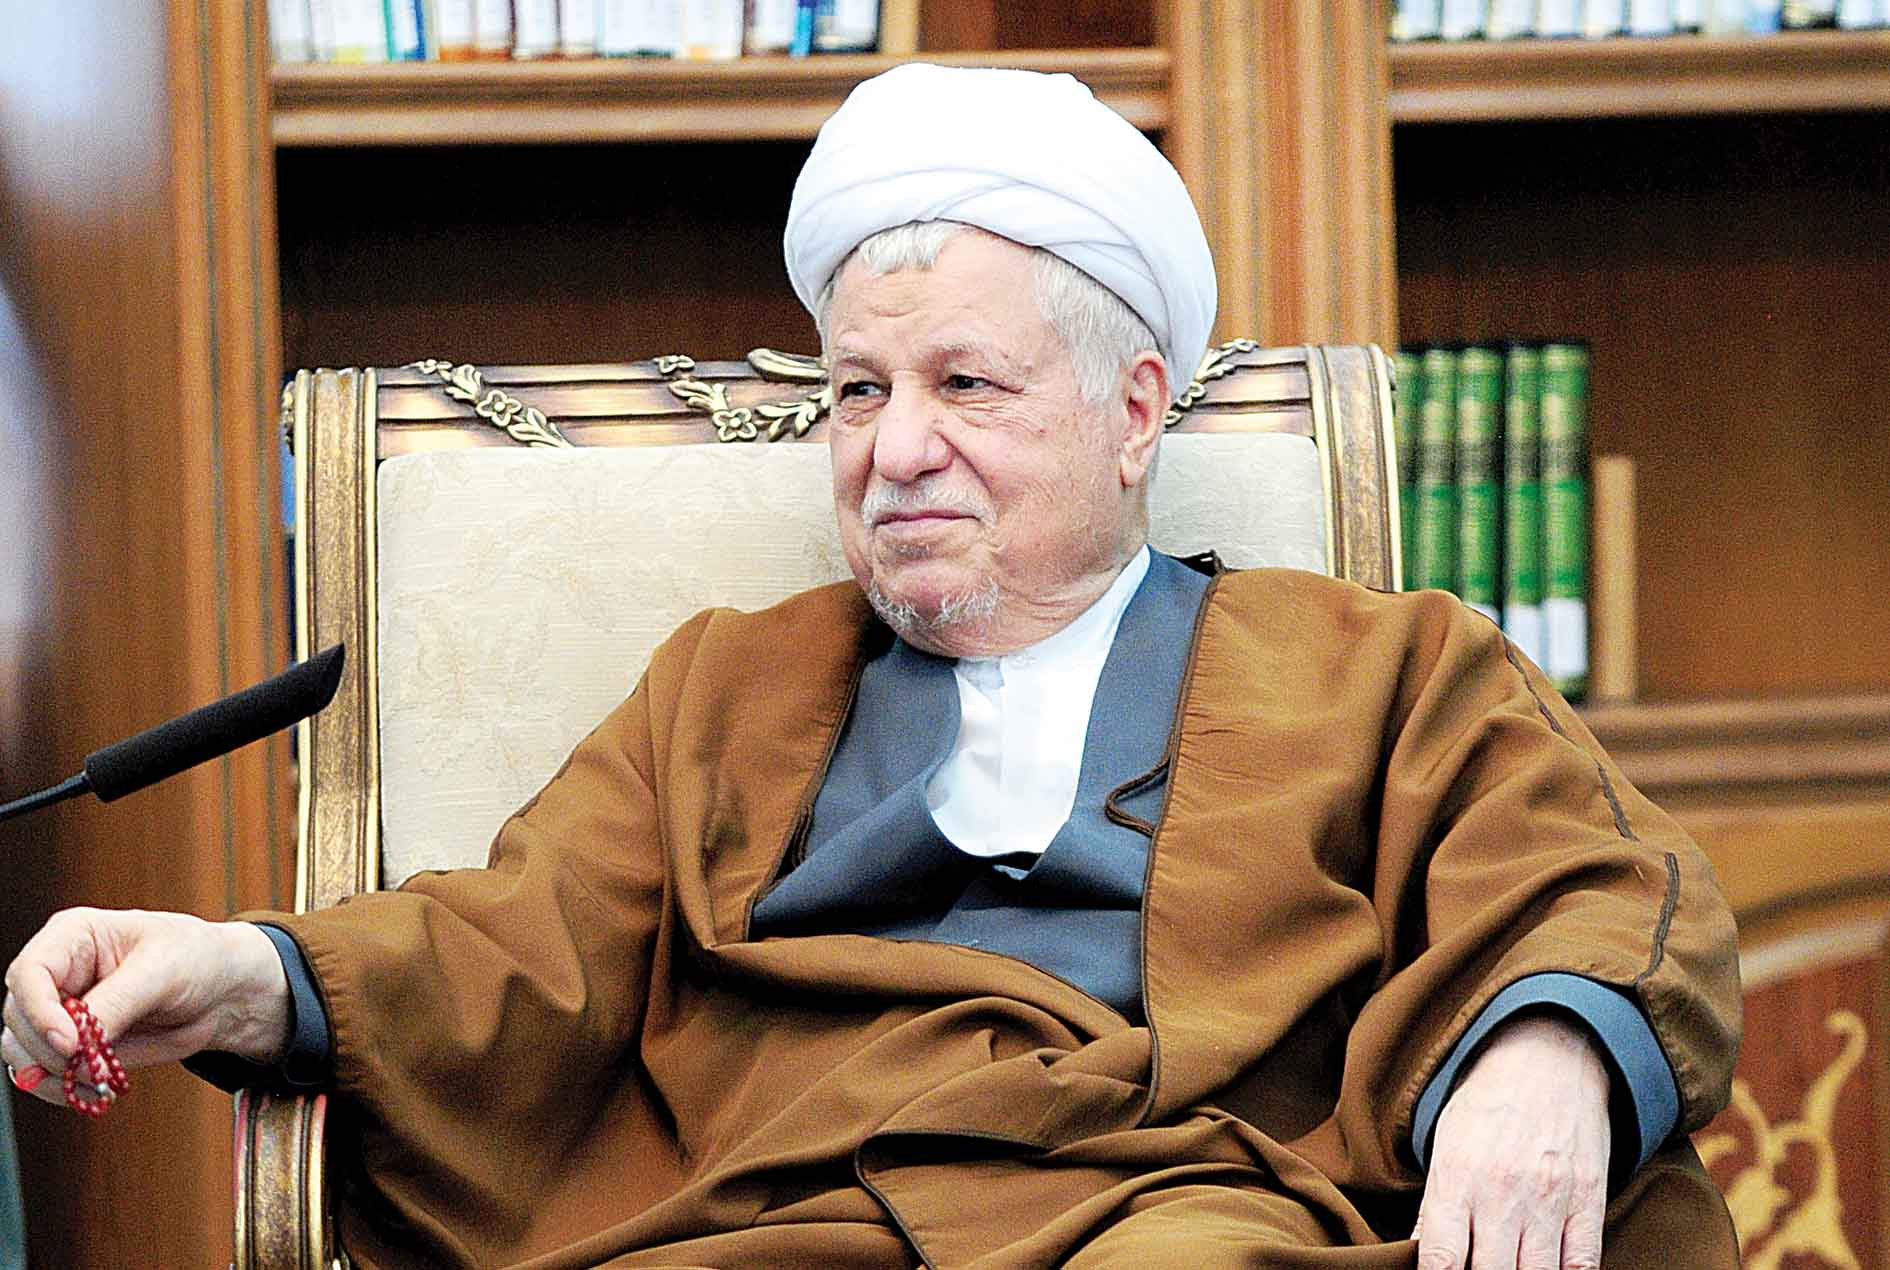 وزیر اسبق اطلاعات: استراتژي اصلي دولت احمدی نژاد اهانت به هاشمي بود